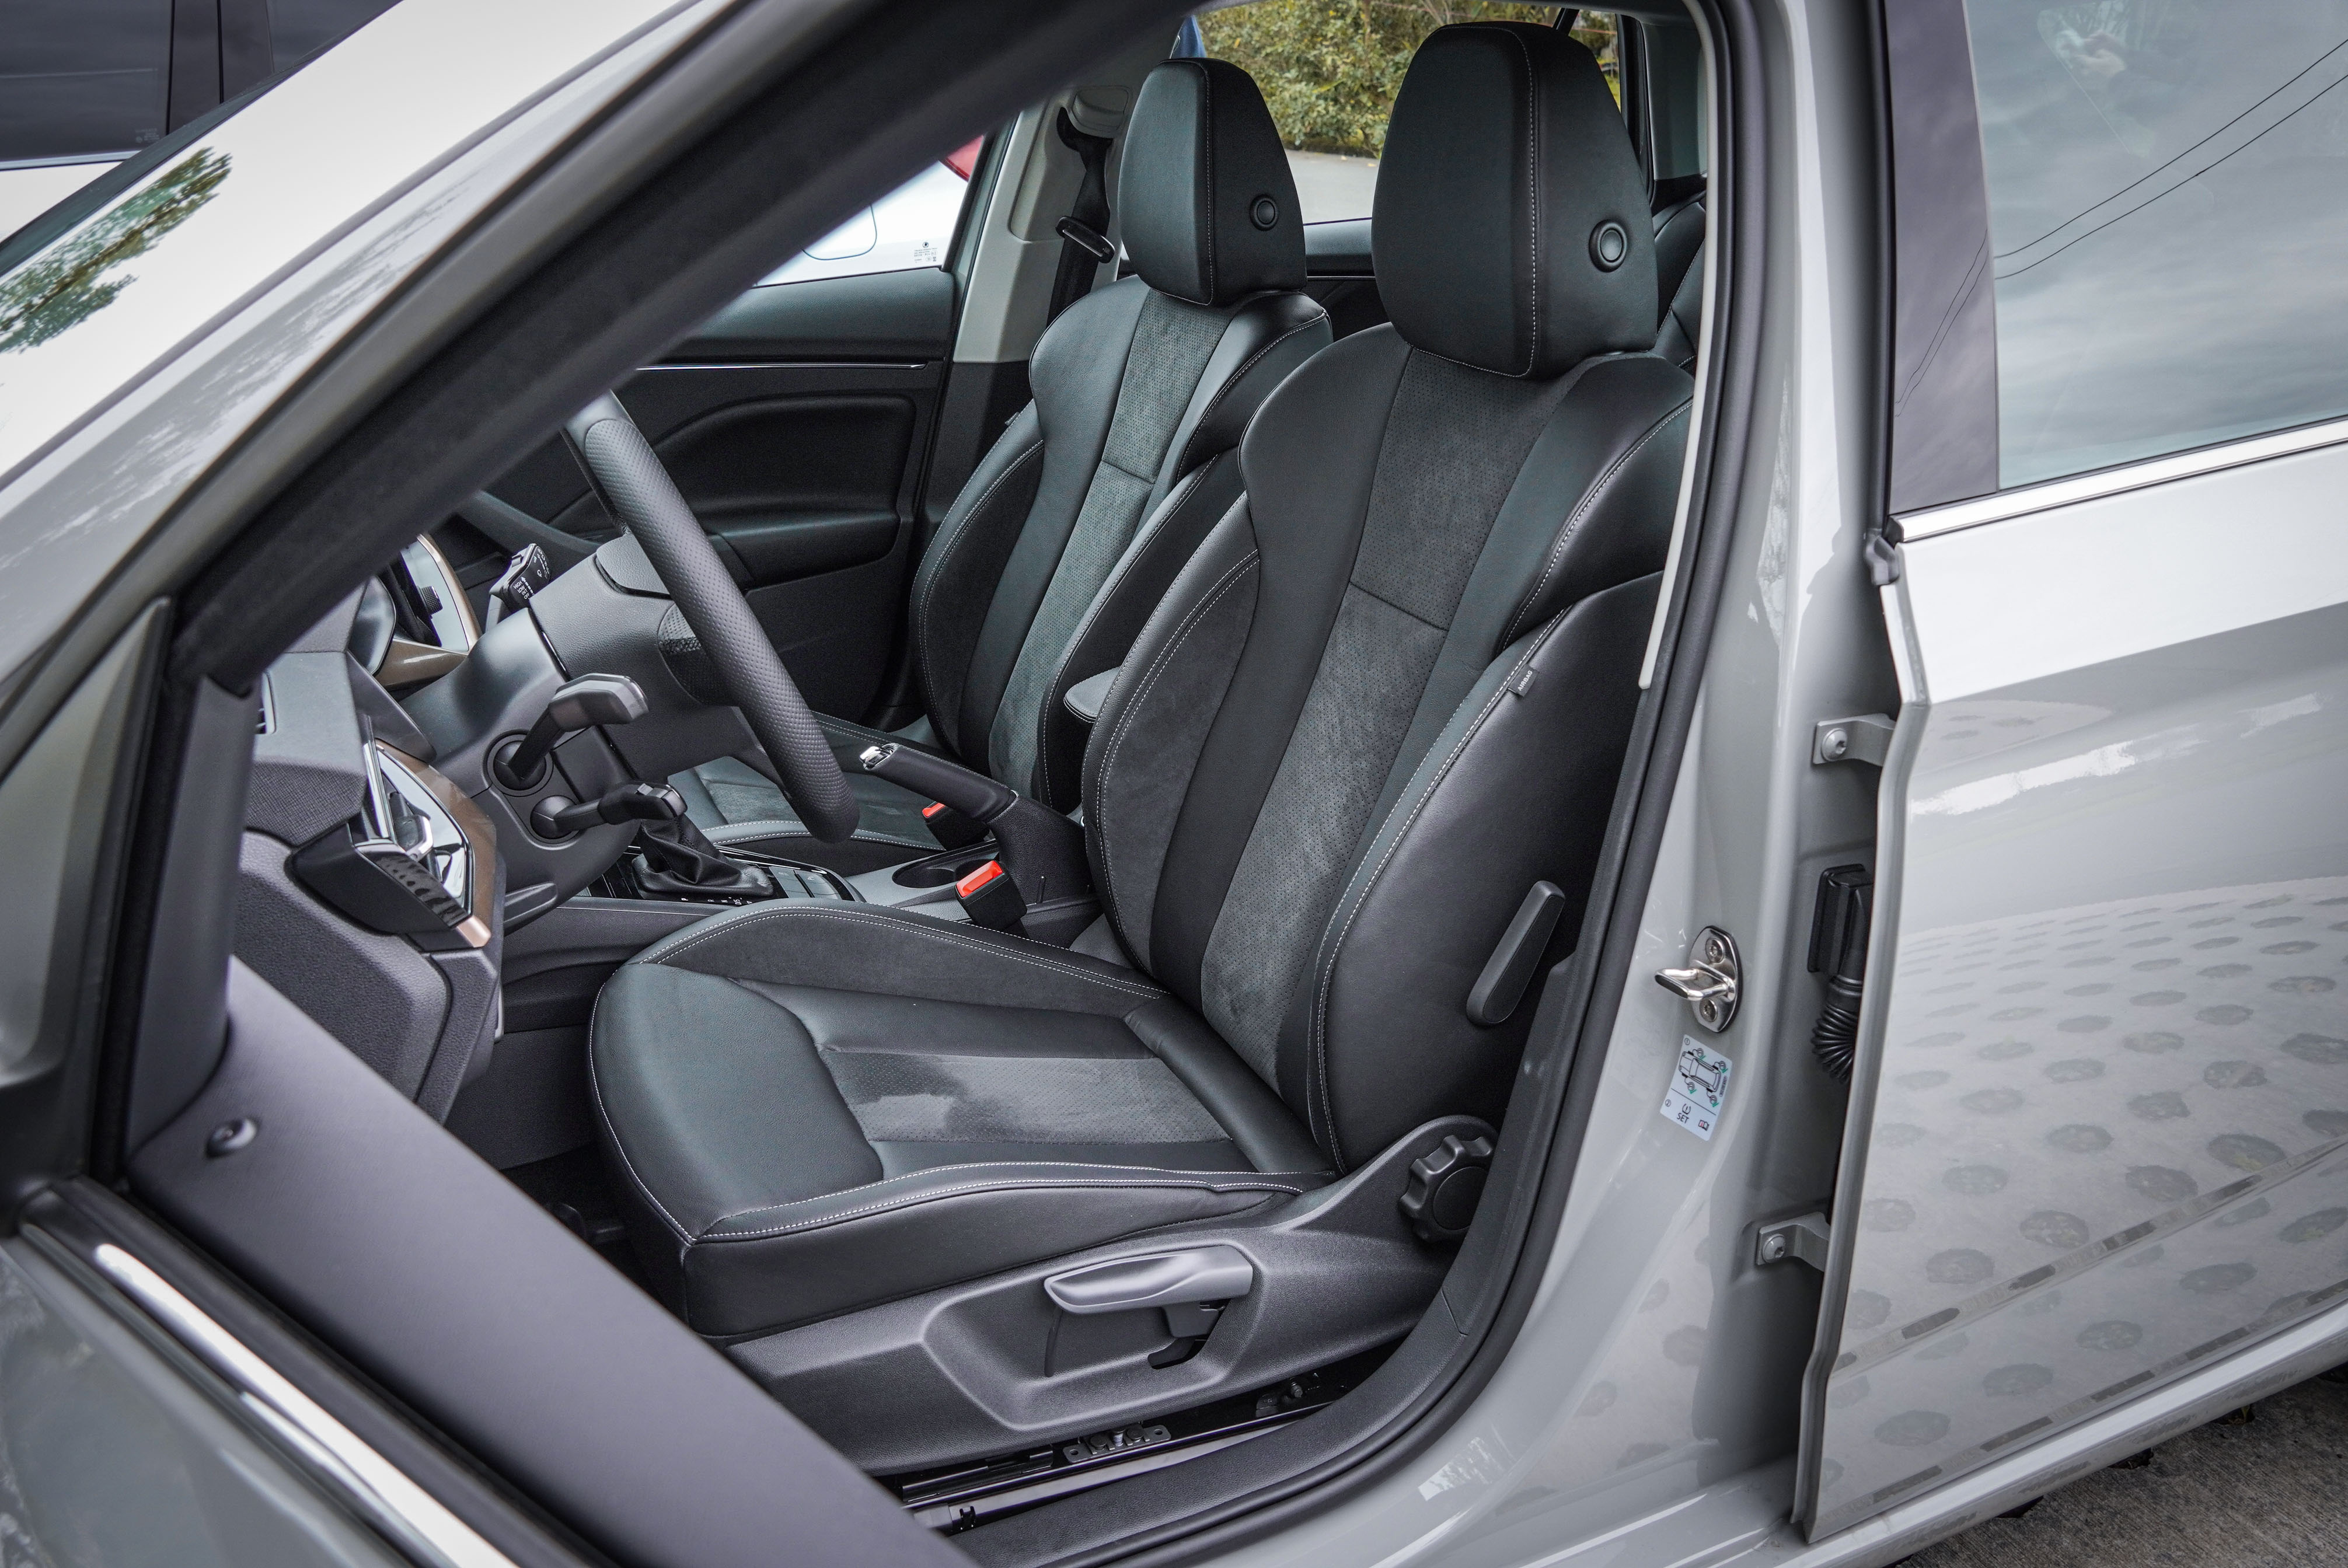 豪華版車型標配 Alcantara、真皮、透氣真皮混搭座椅。